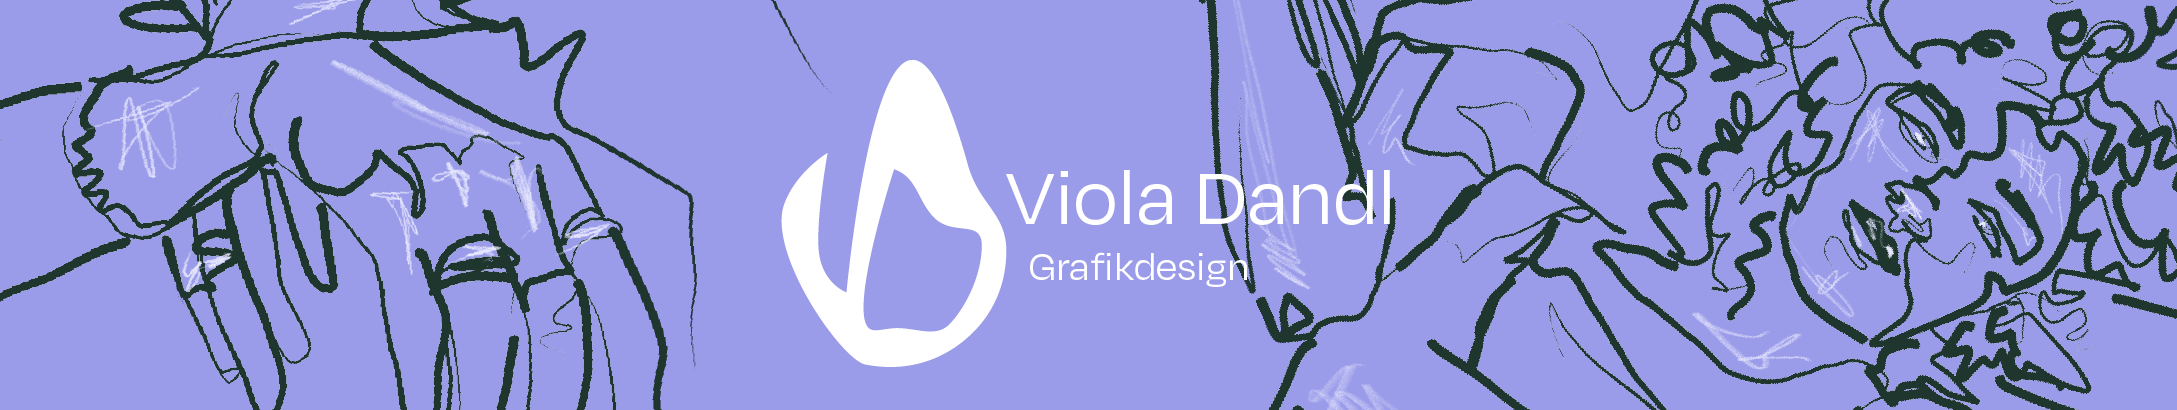 Viola Dandl のプロファイルバナー